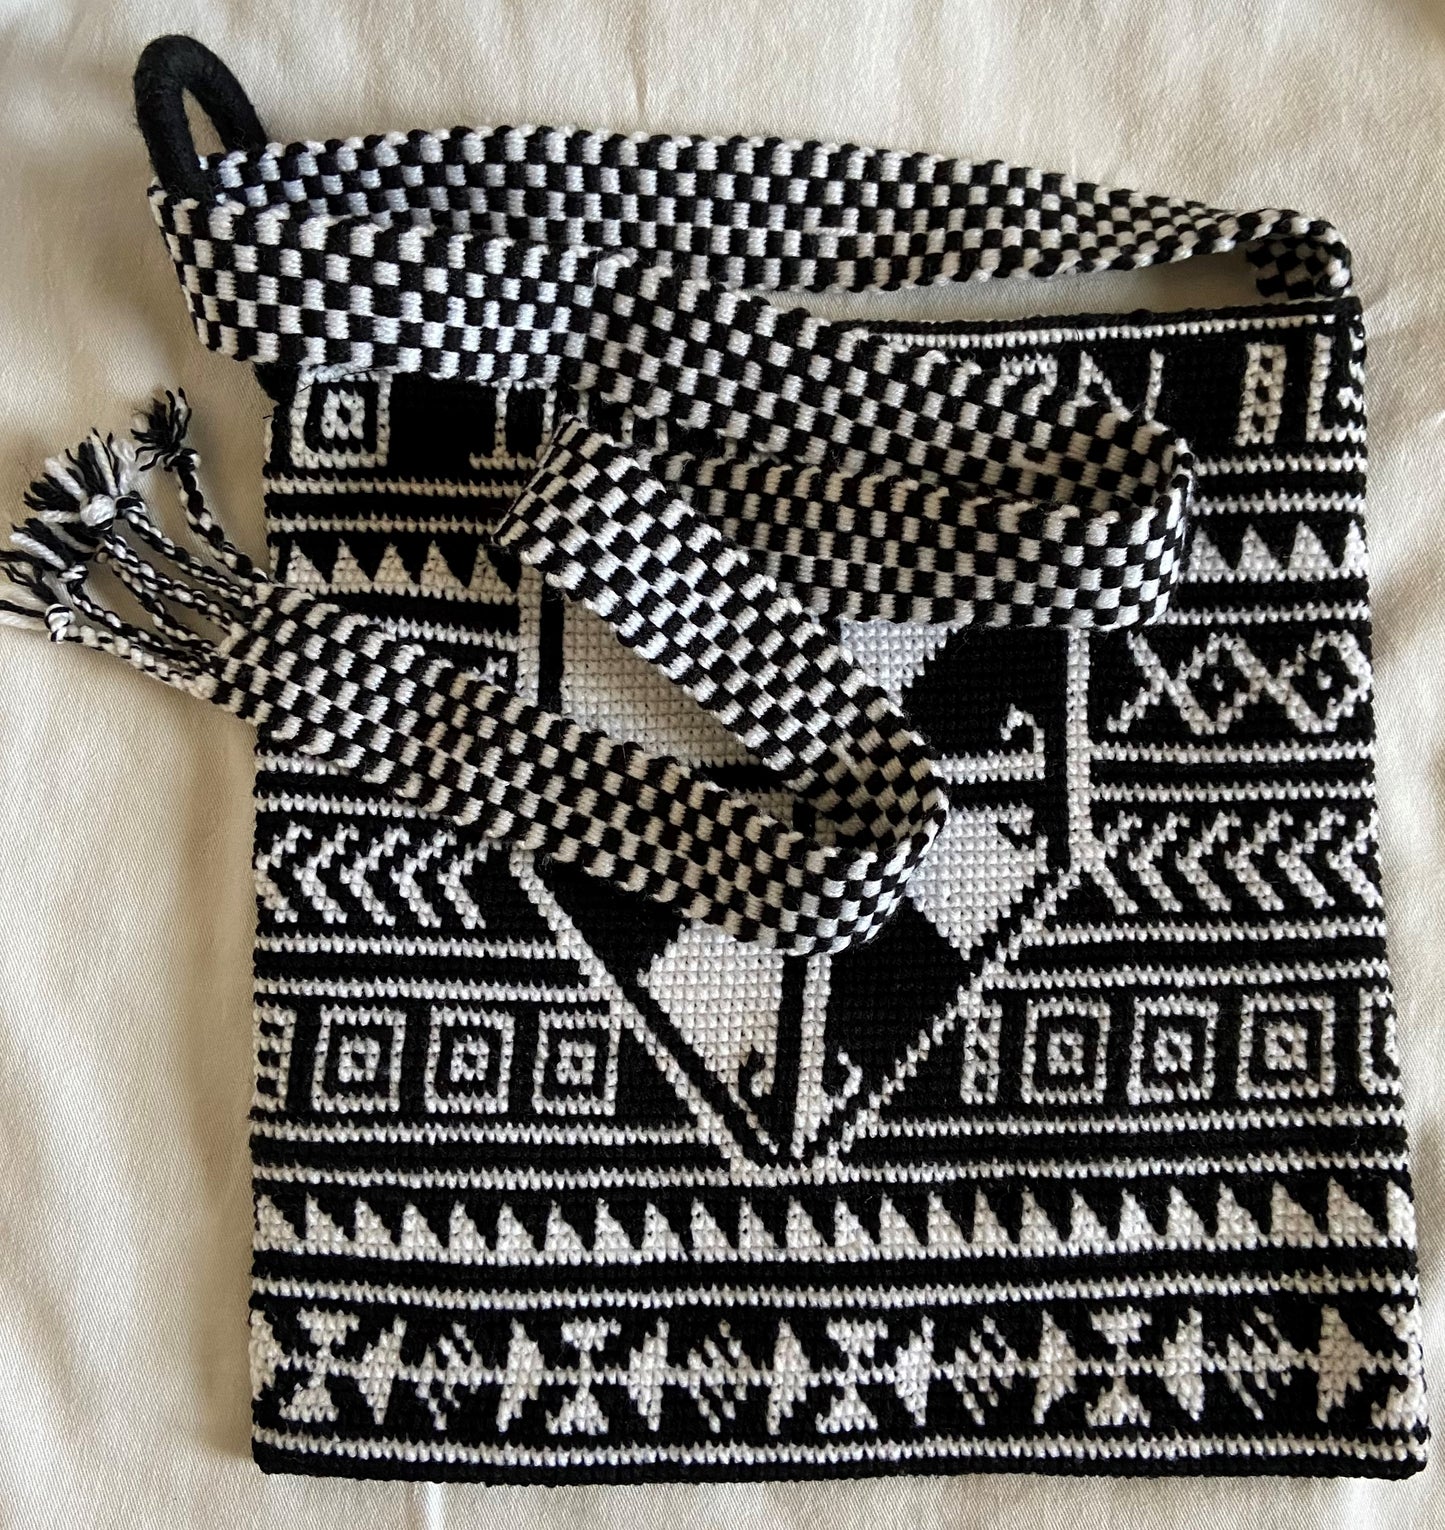 Bag: Black/White Satchel Woven